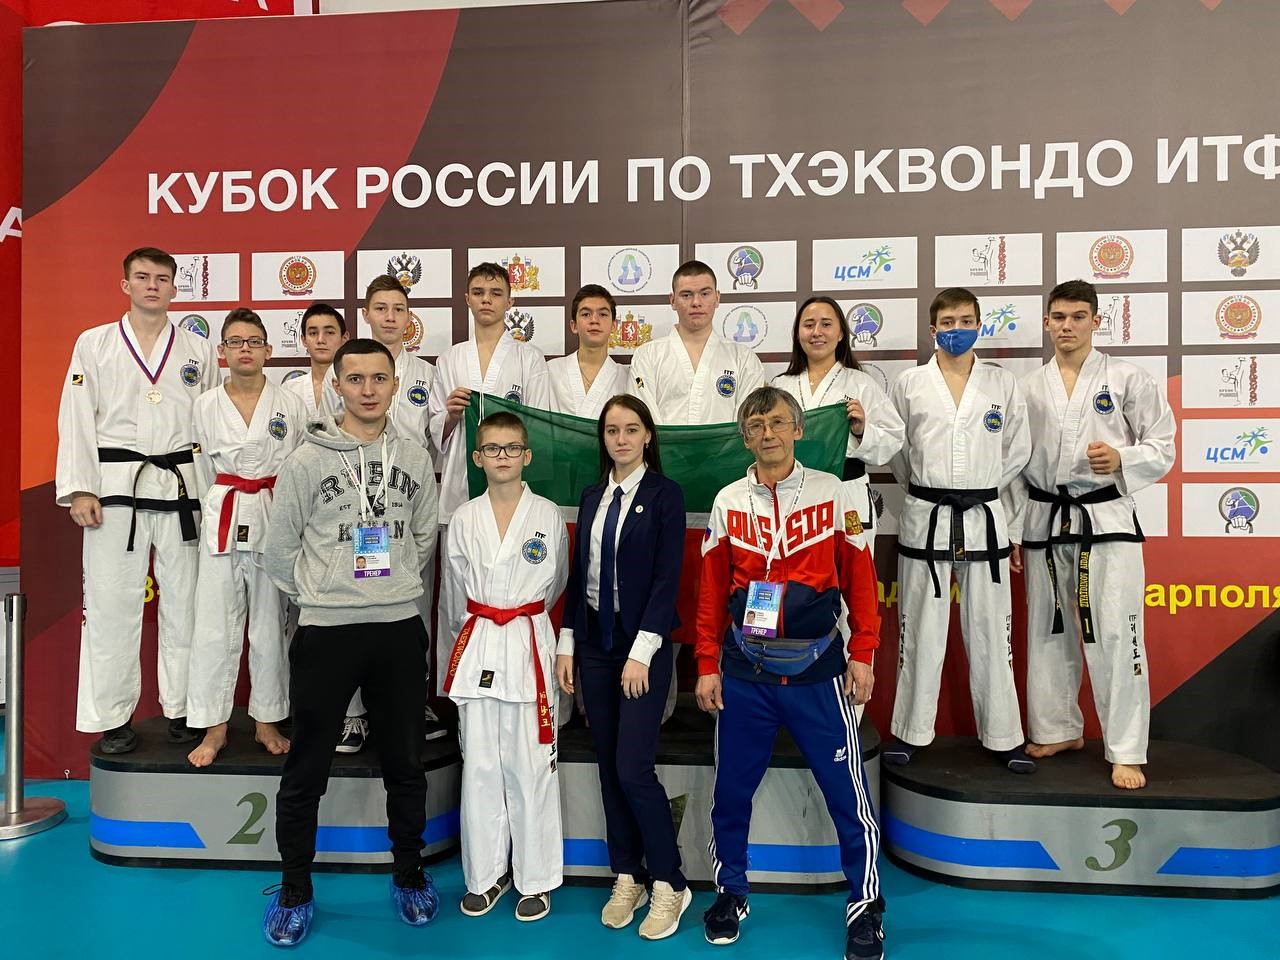 Тхэквондо ИТФ - Центр спортивной подготовки Республики Татарстан